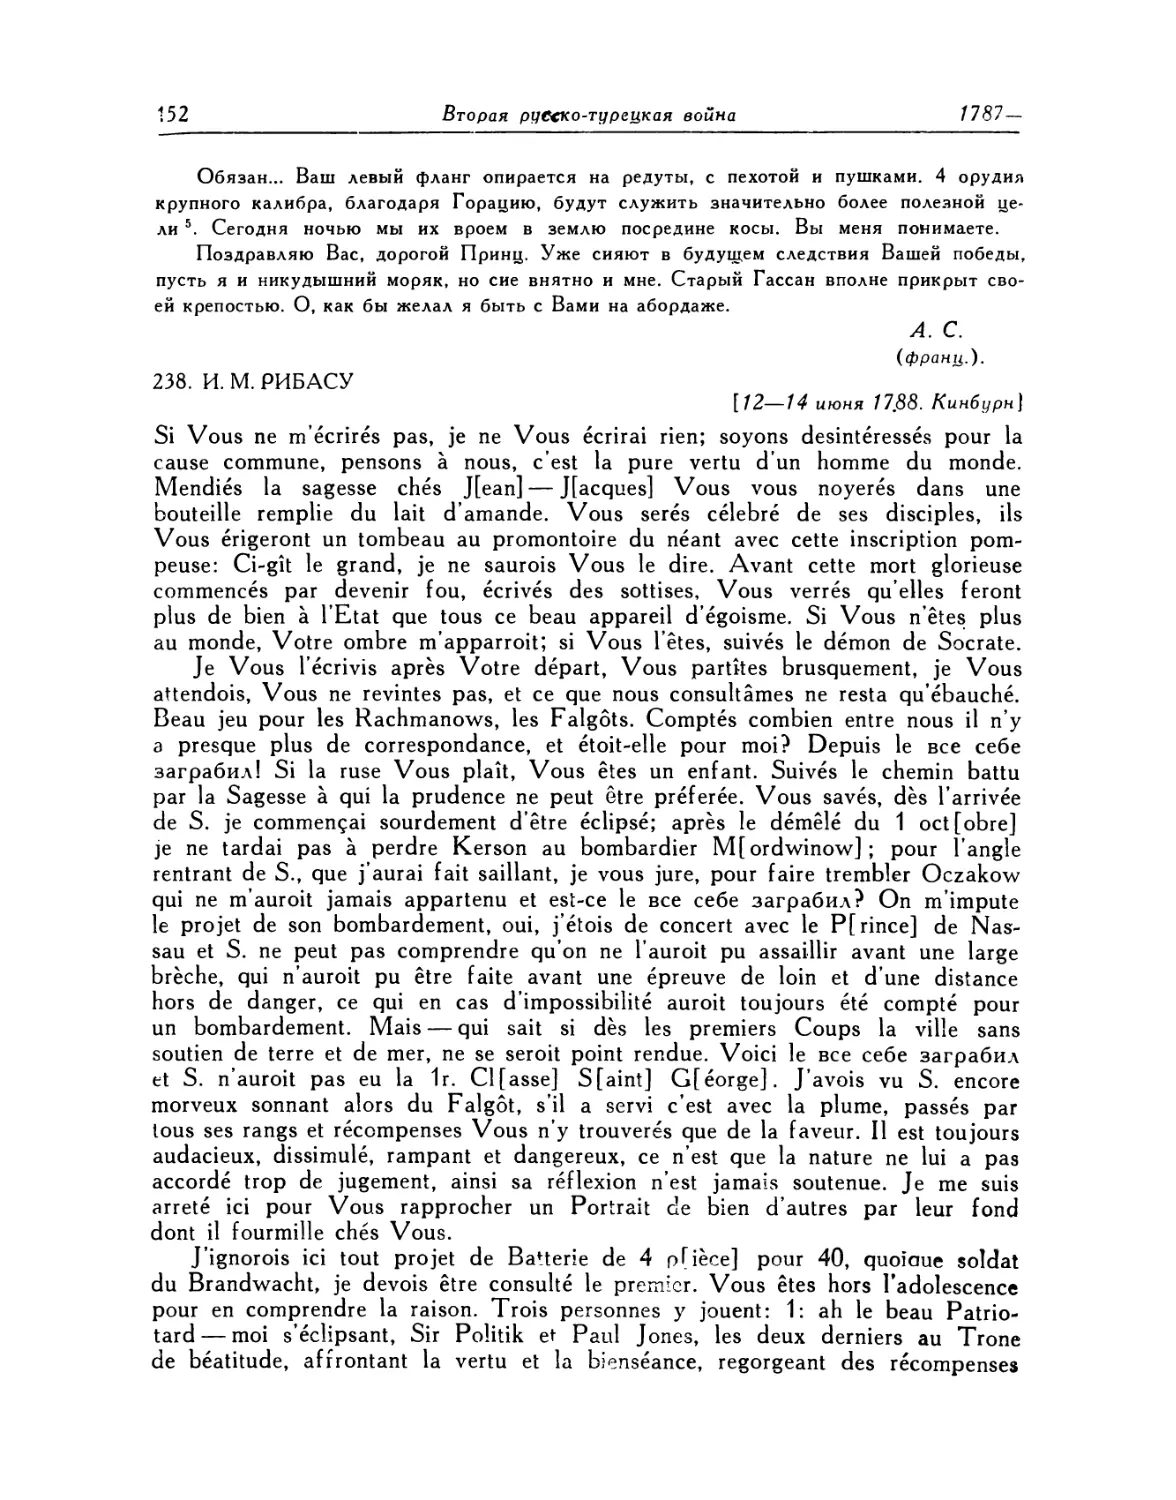 238. И. М. Рибасу. 12—14.VI.1788